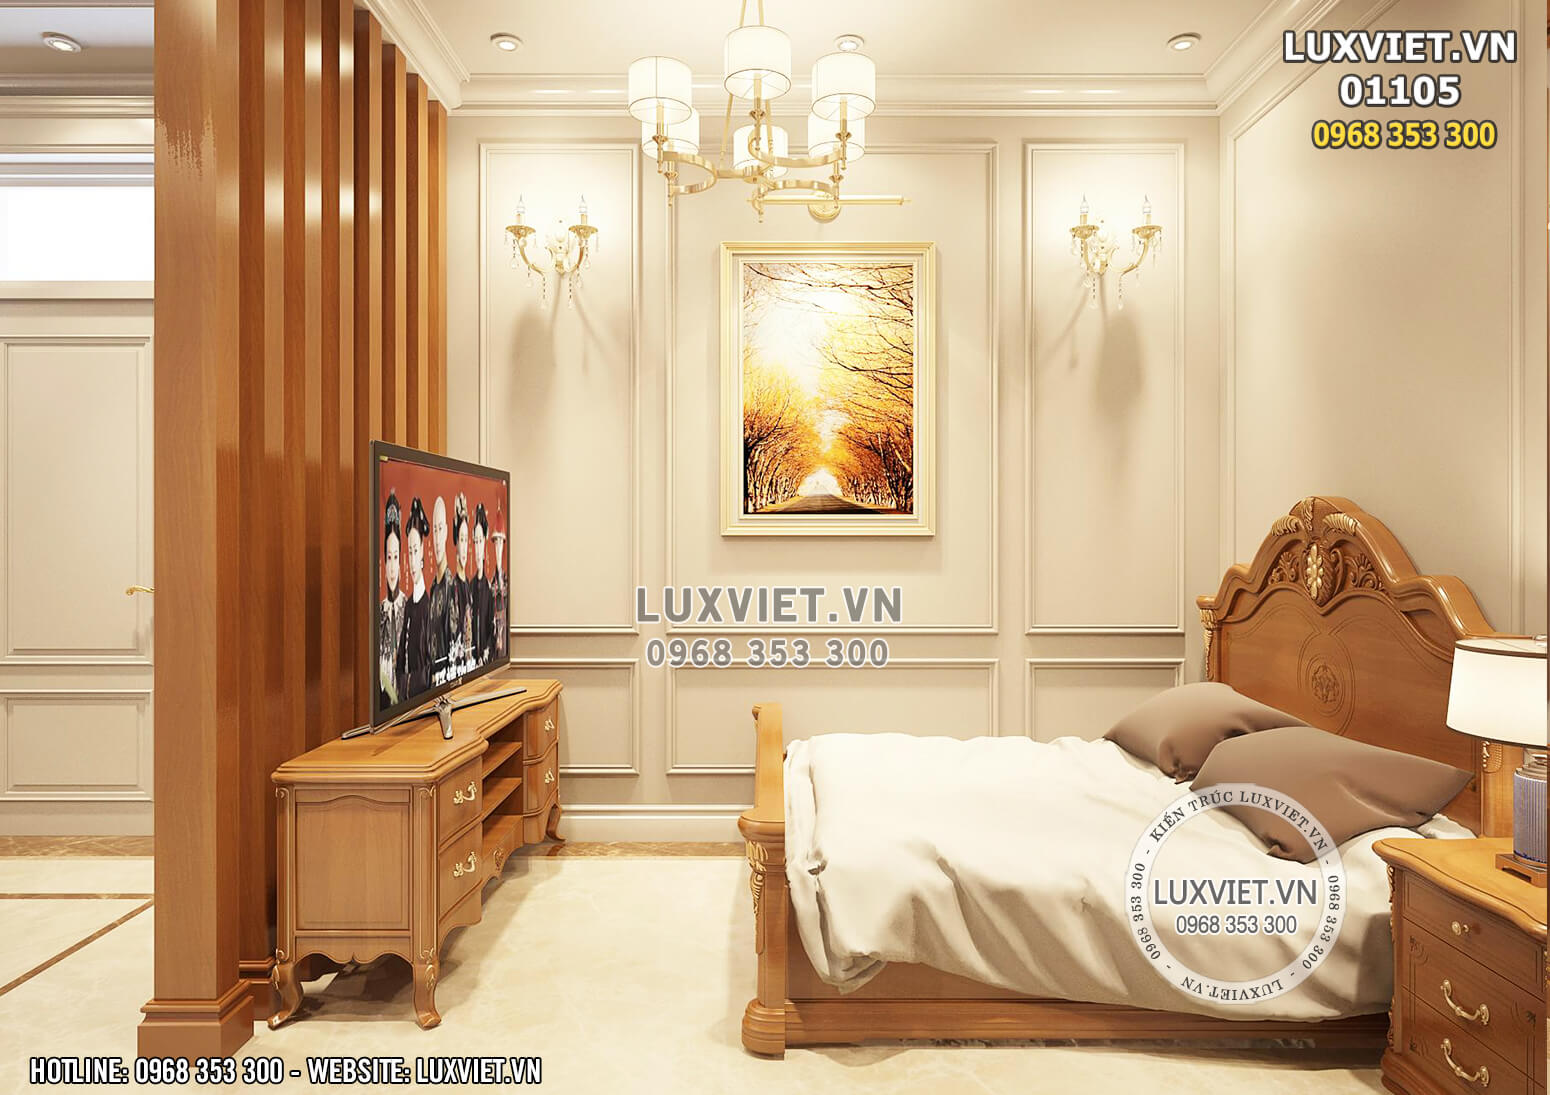 Hình ảnh: Thiết kế nội thất tân cổ điển cho phòng ngủ - LV 01105